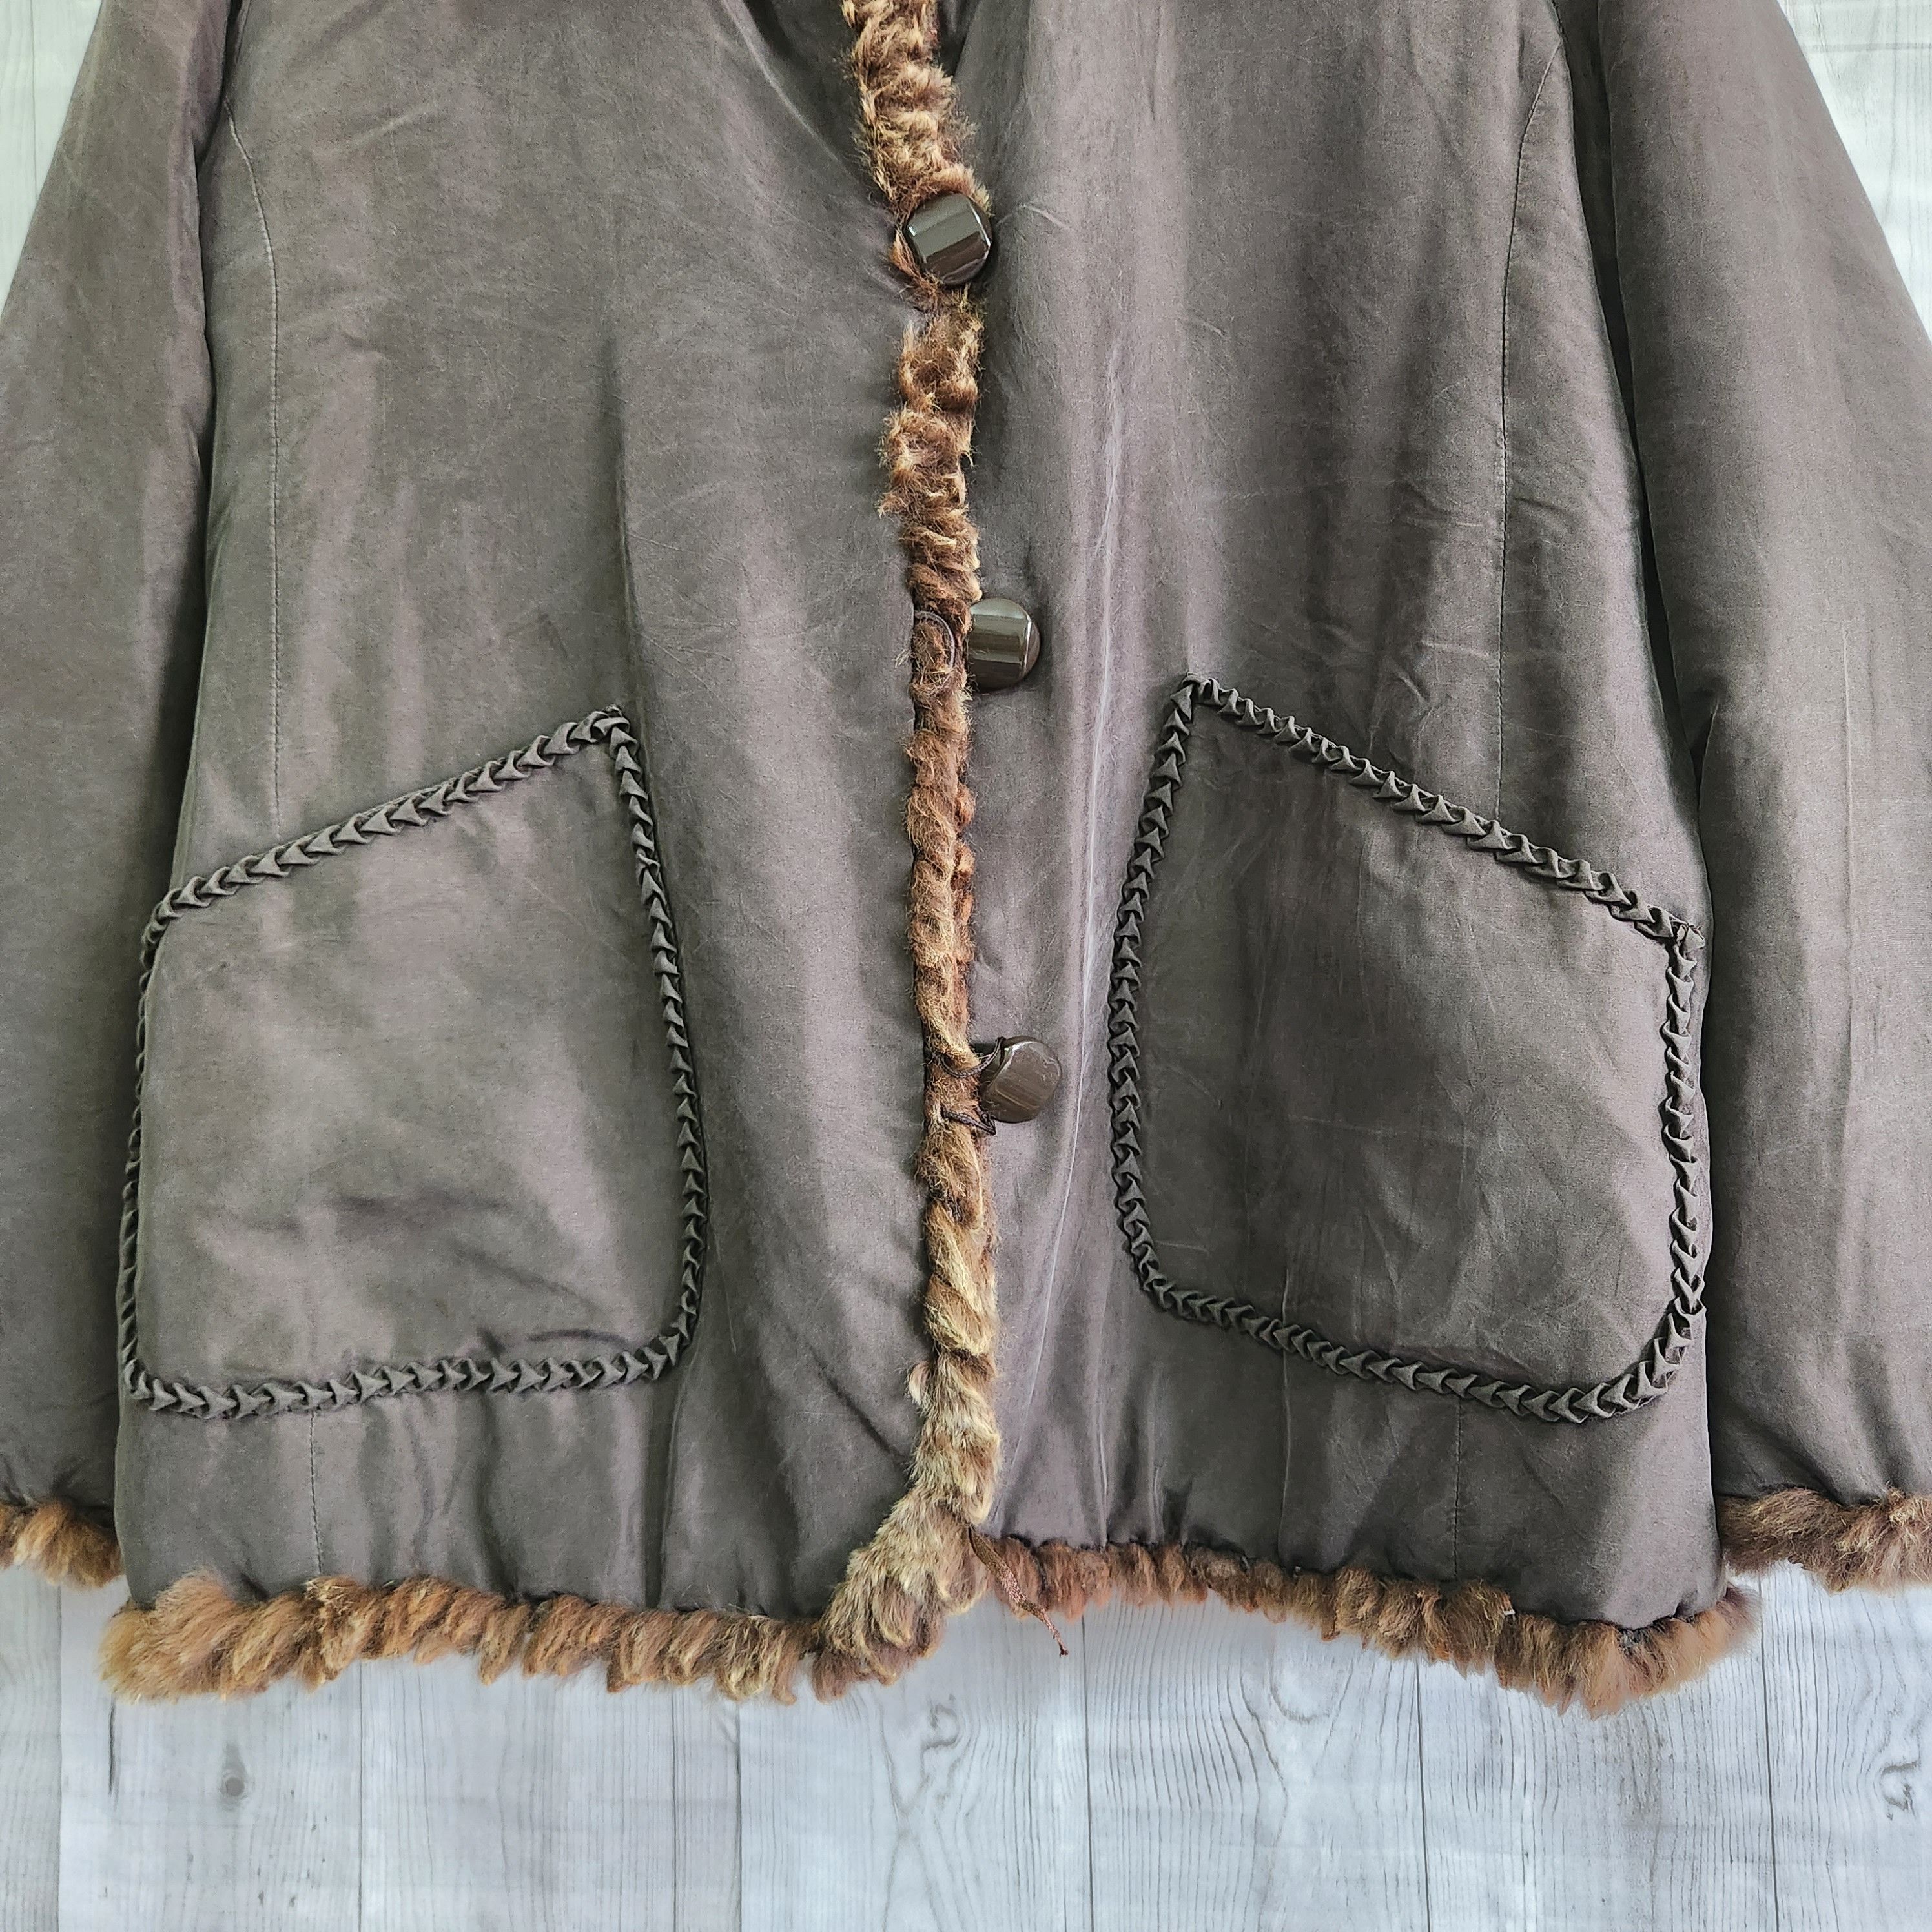 Fur Reversible Jacket By Japanese Designer Unbranded - 12